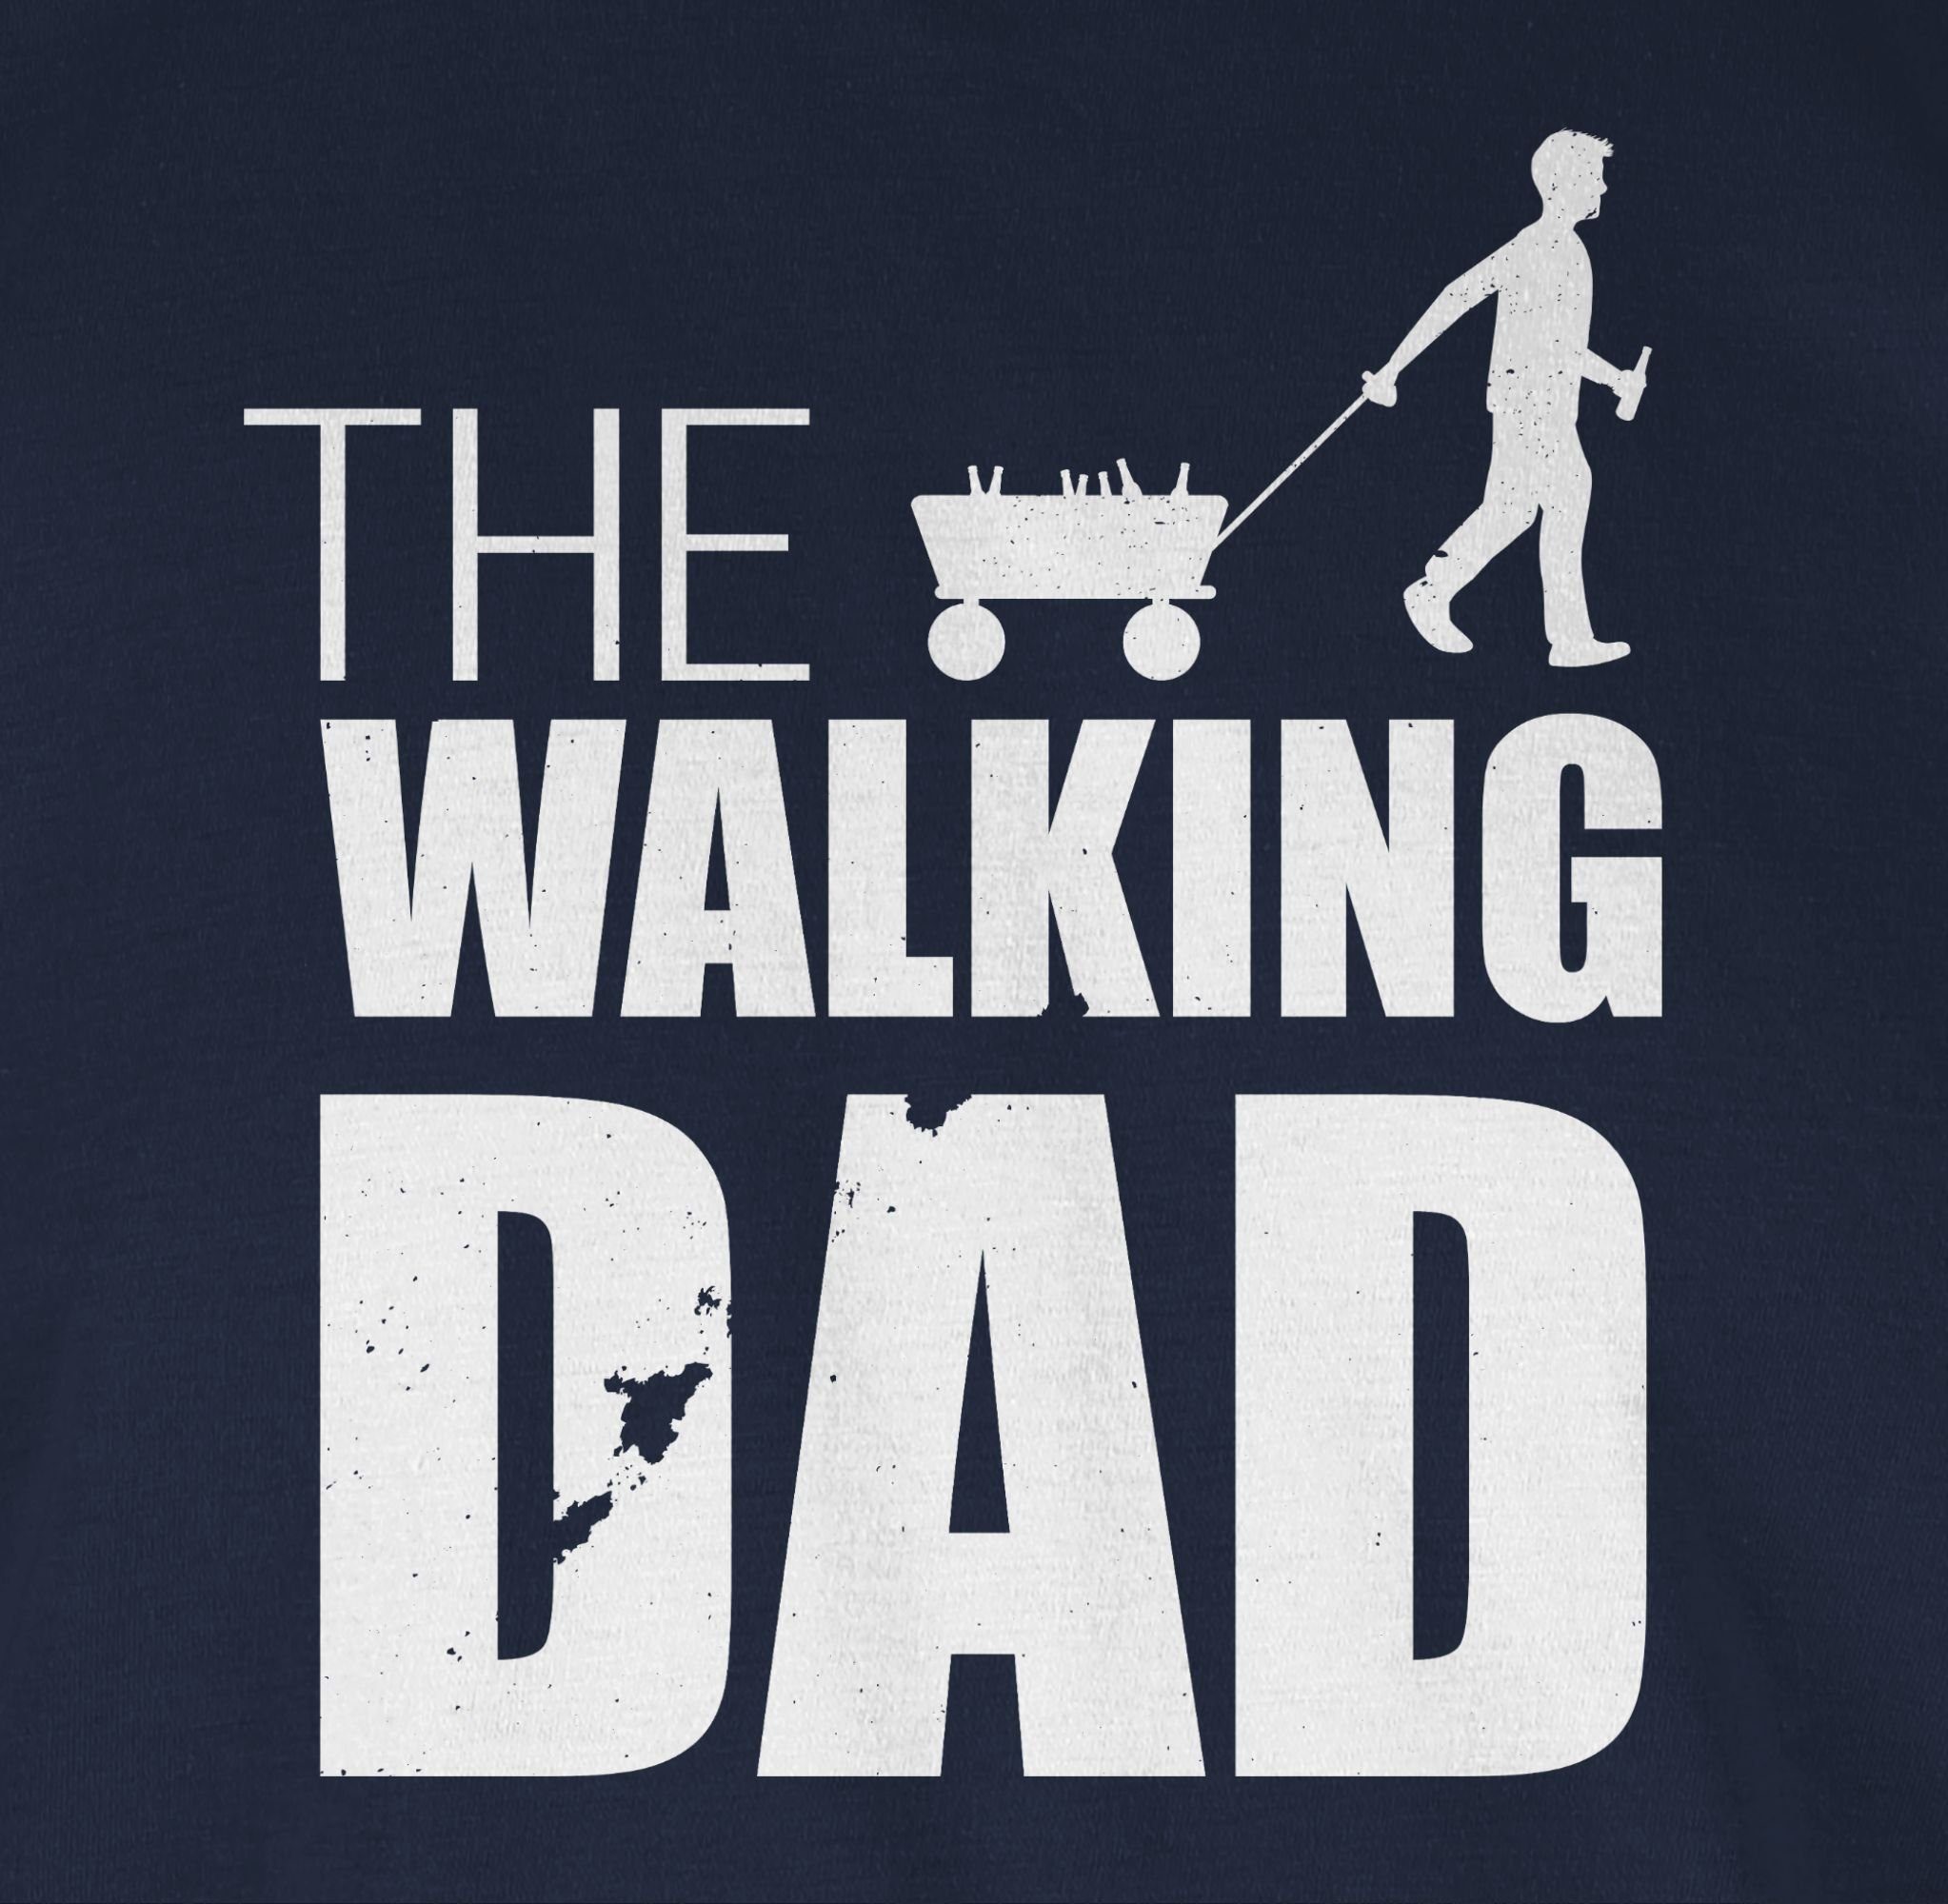 Shirtracer T-Shirt Bollerwagen Geschenk Papa Vatertag The Dad für 2 Walking Blau Navy